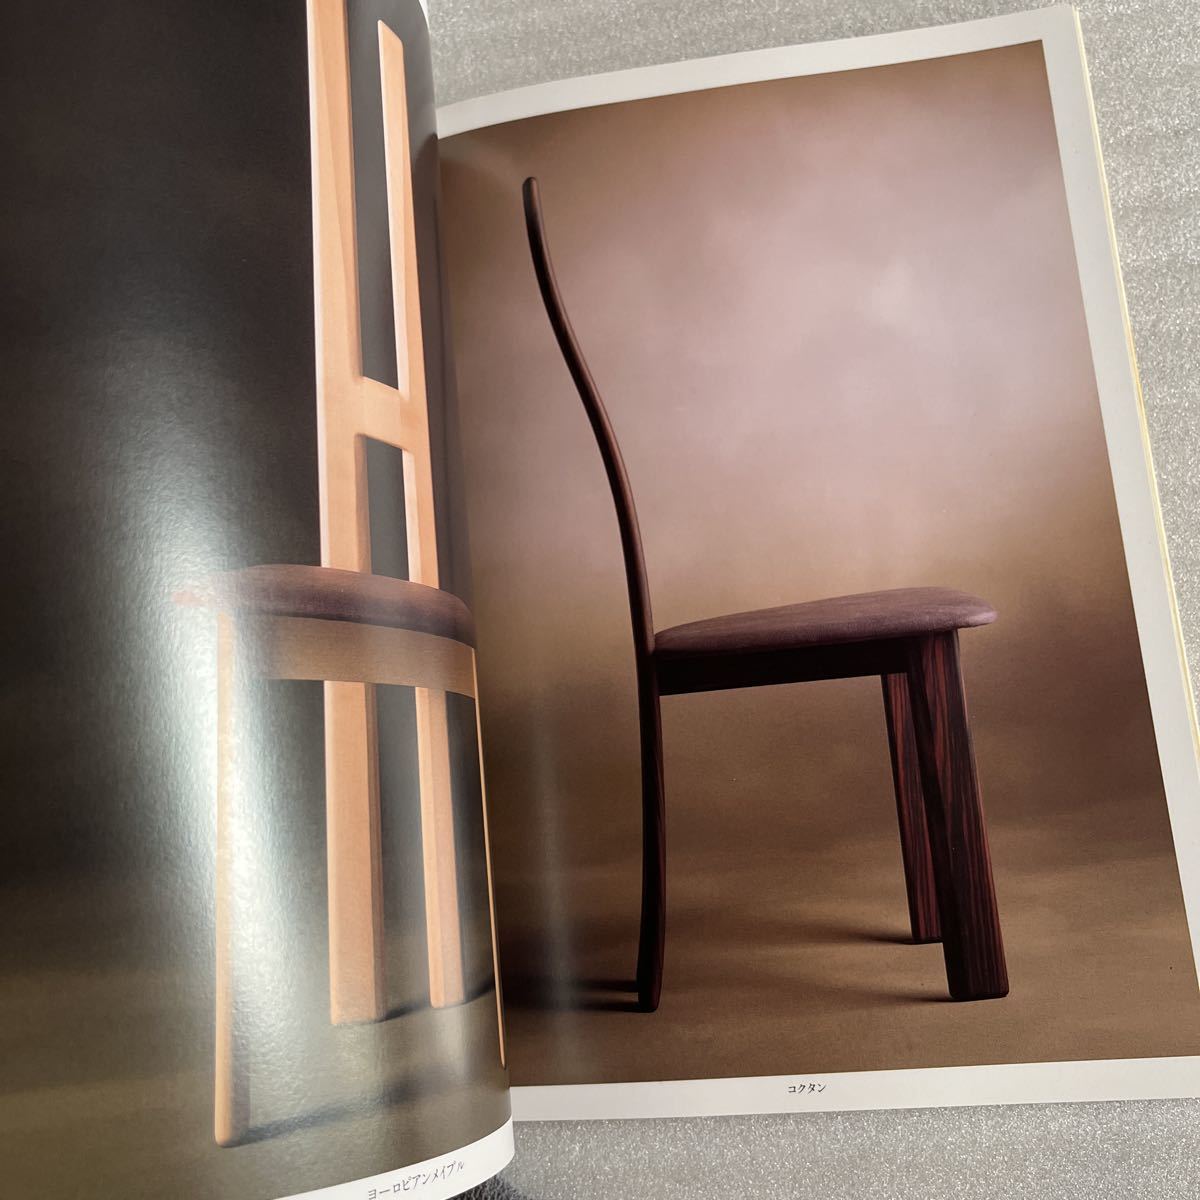 [ очень редкий ] редкий каталог Shigeki Miyamoto мебель интерьер стул .книга@.. рекламная листовка проспект подлинная вещь collector retro коллекция 